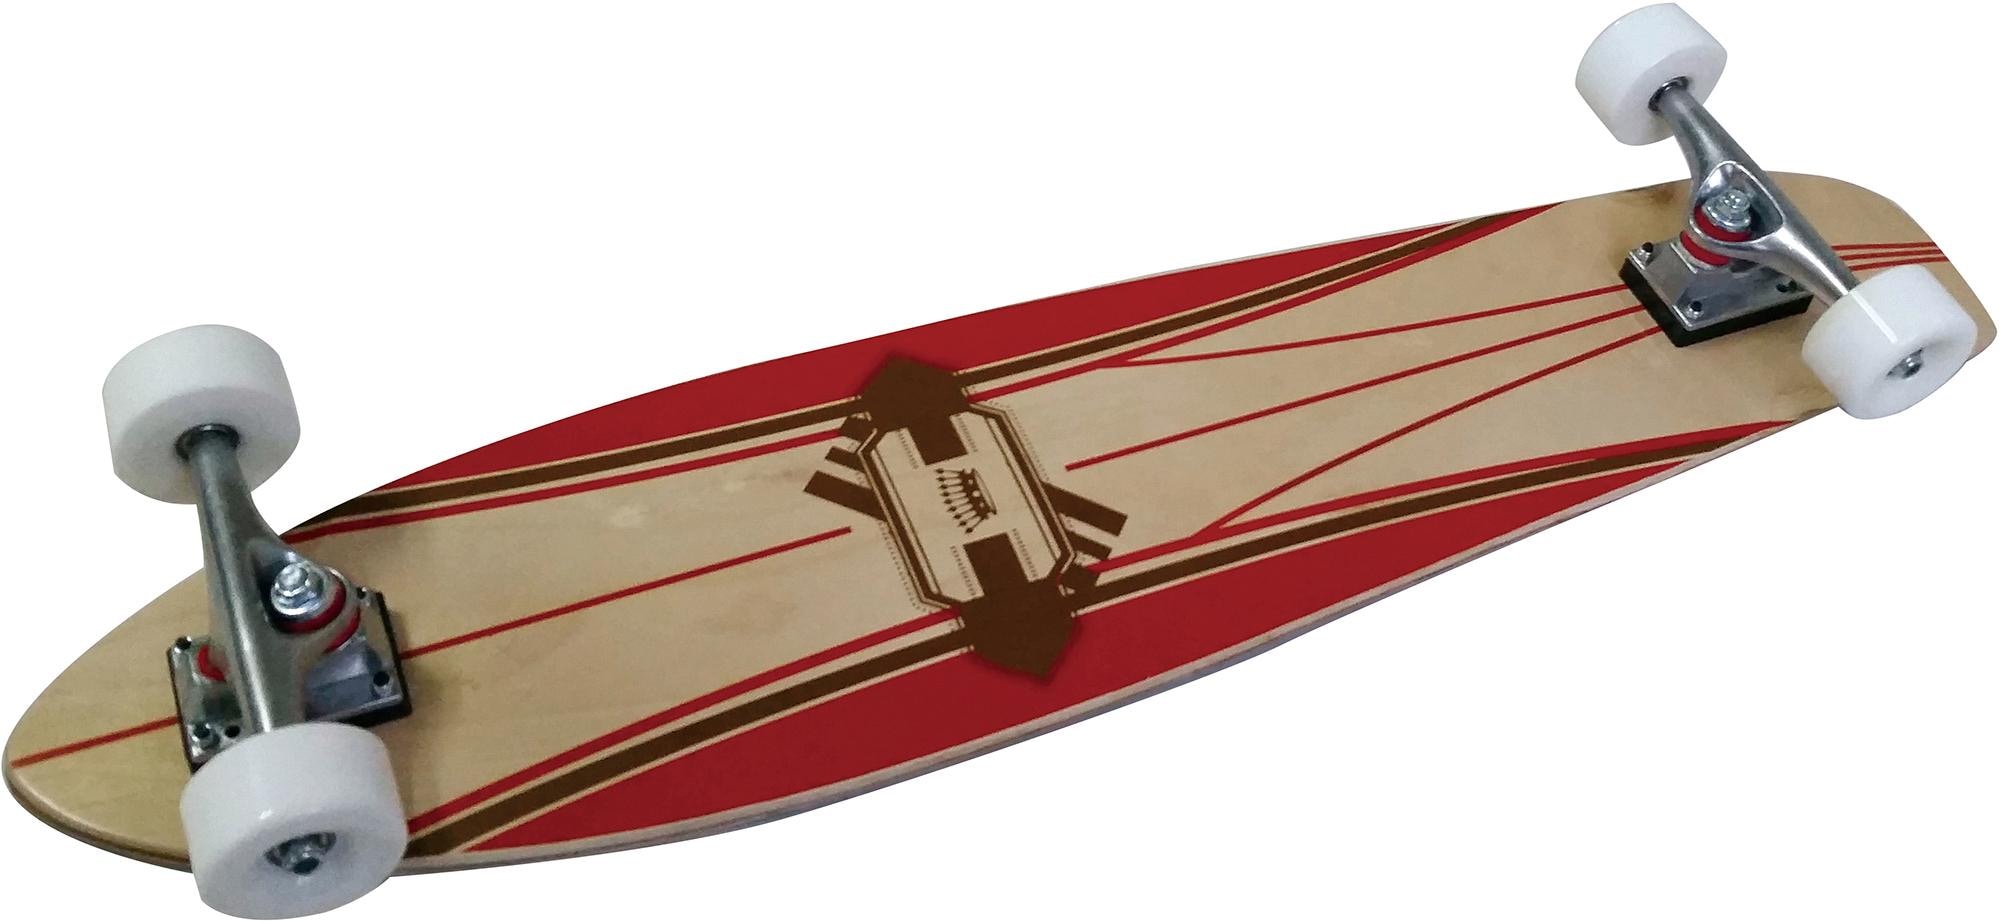 L.A. Sports Longboard »Longboard Concave Cruiser Board« bei